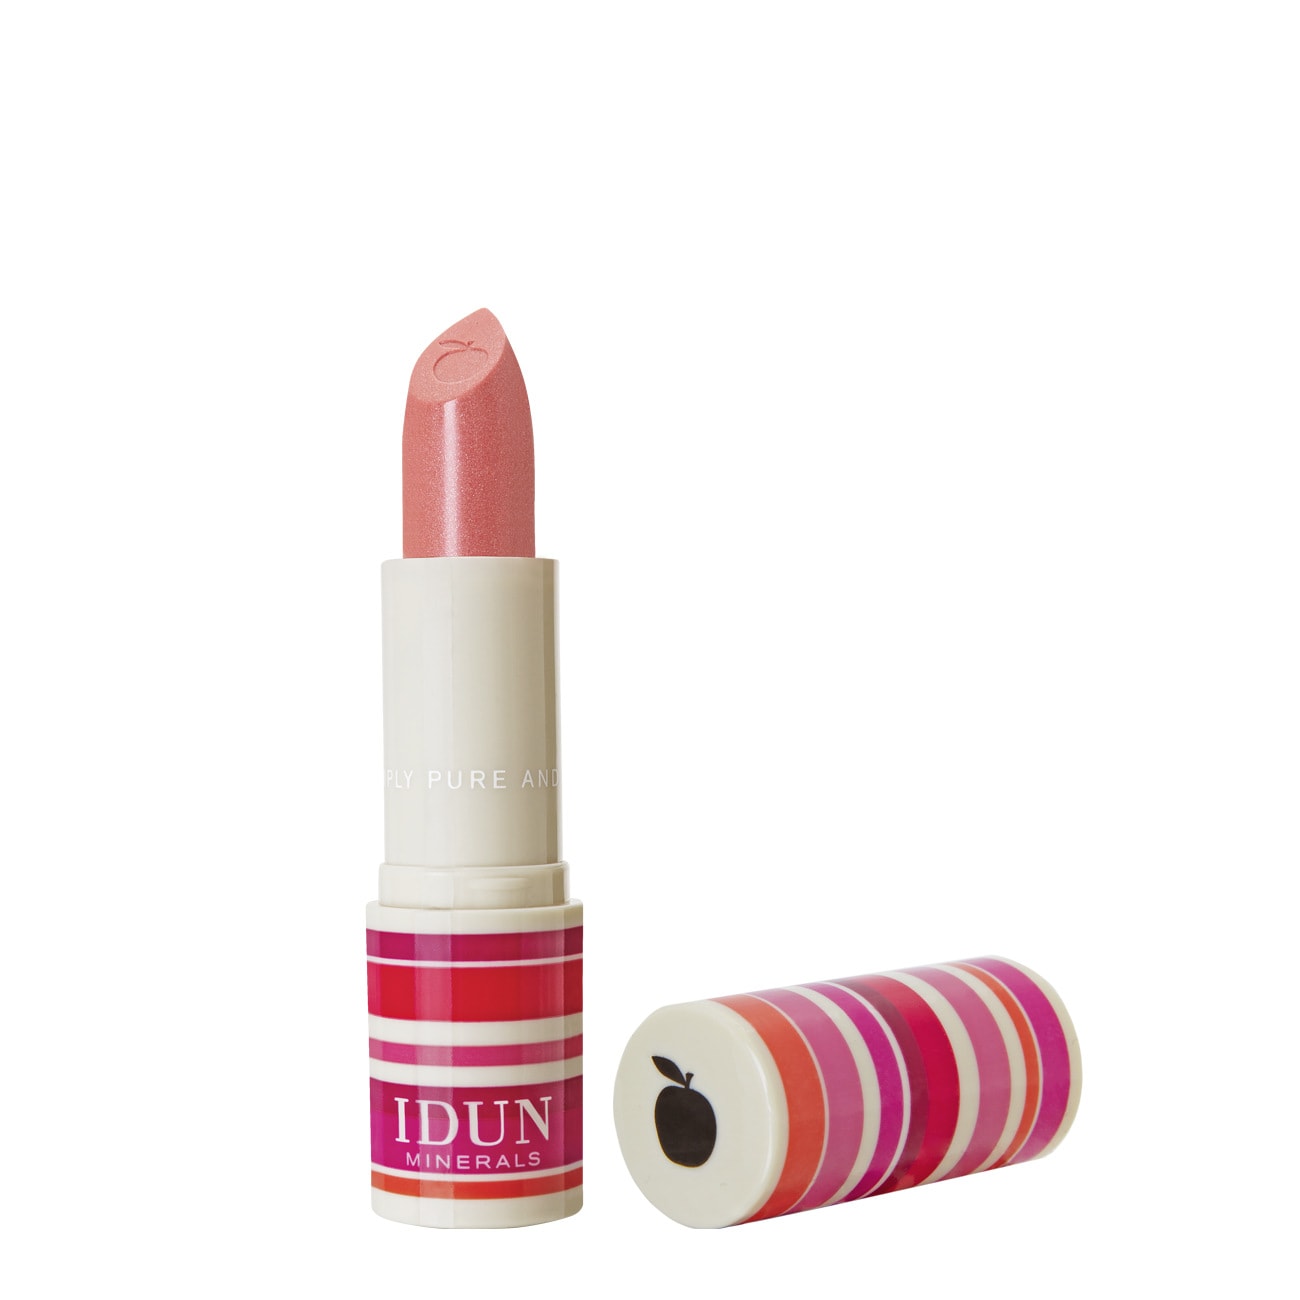 Creme Lipstick från IDUN Minerals